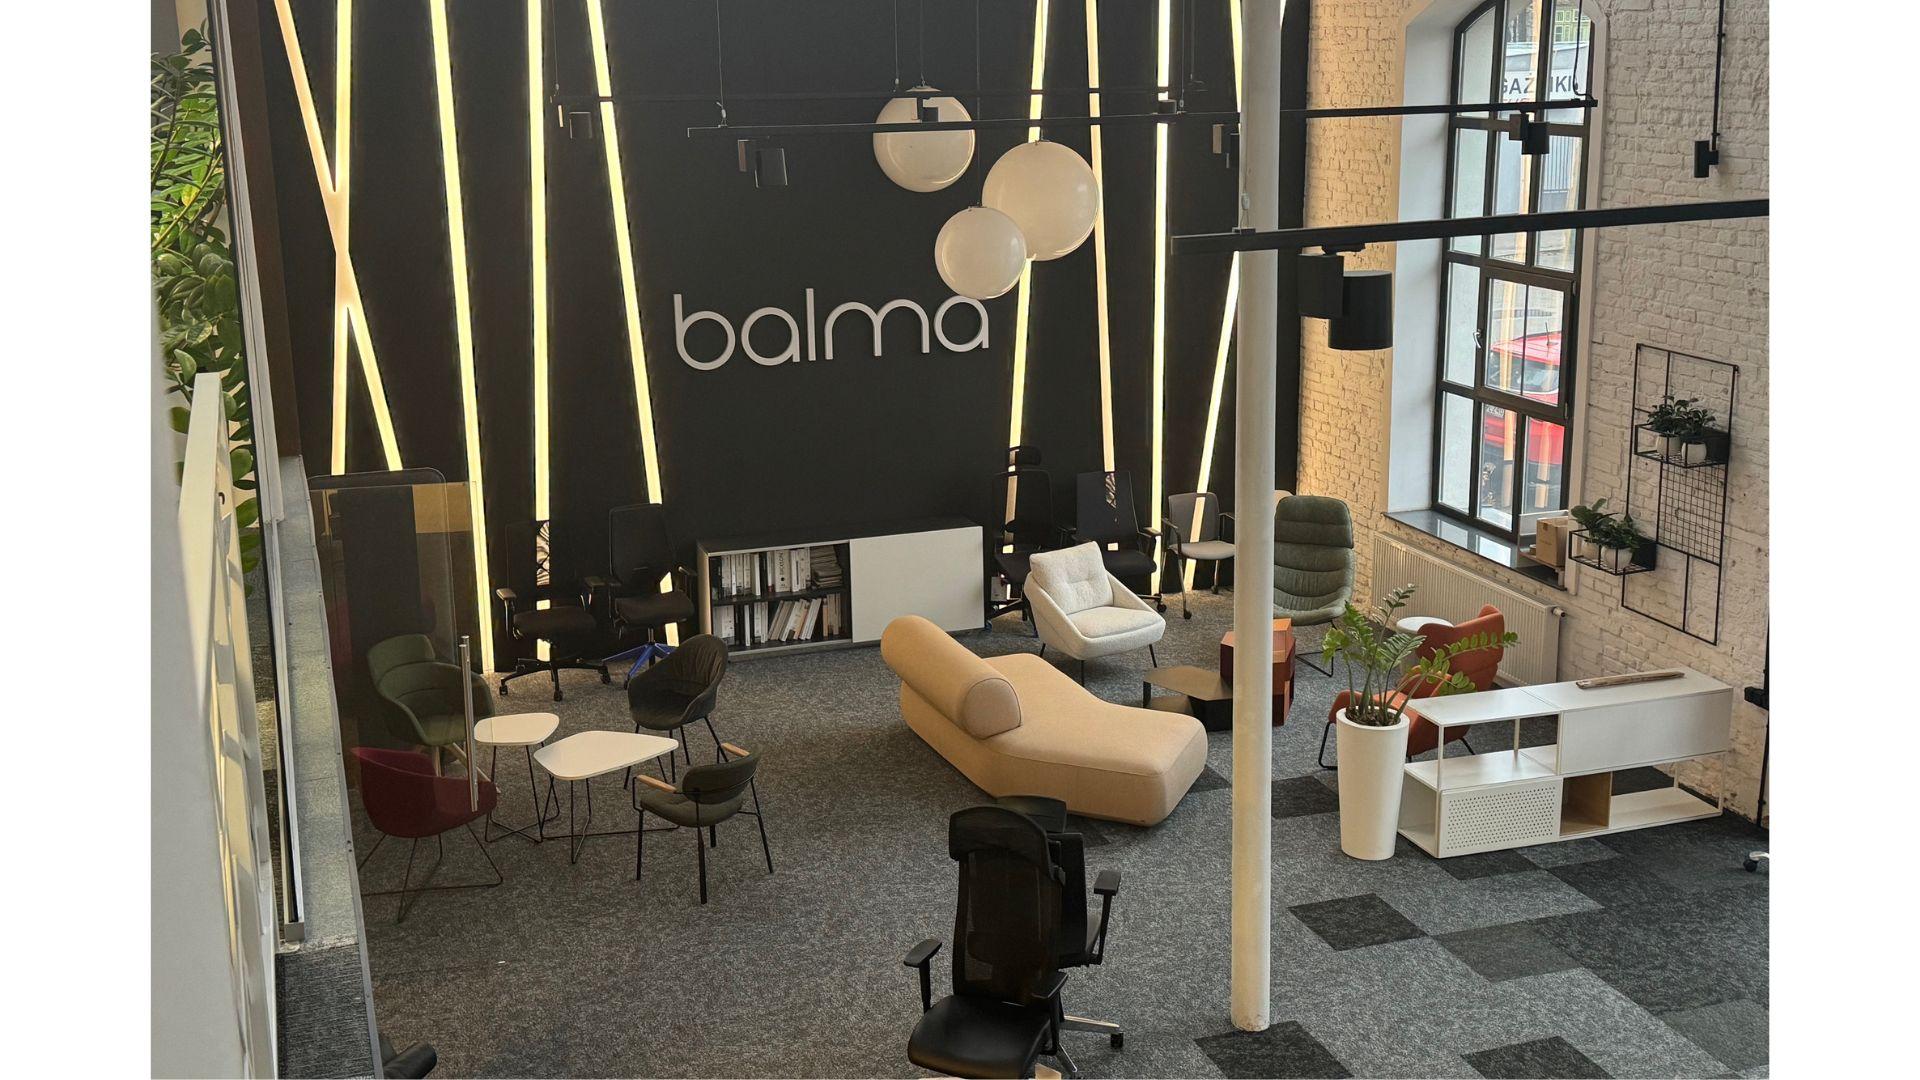 Salon Balma Łódź.jpg